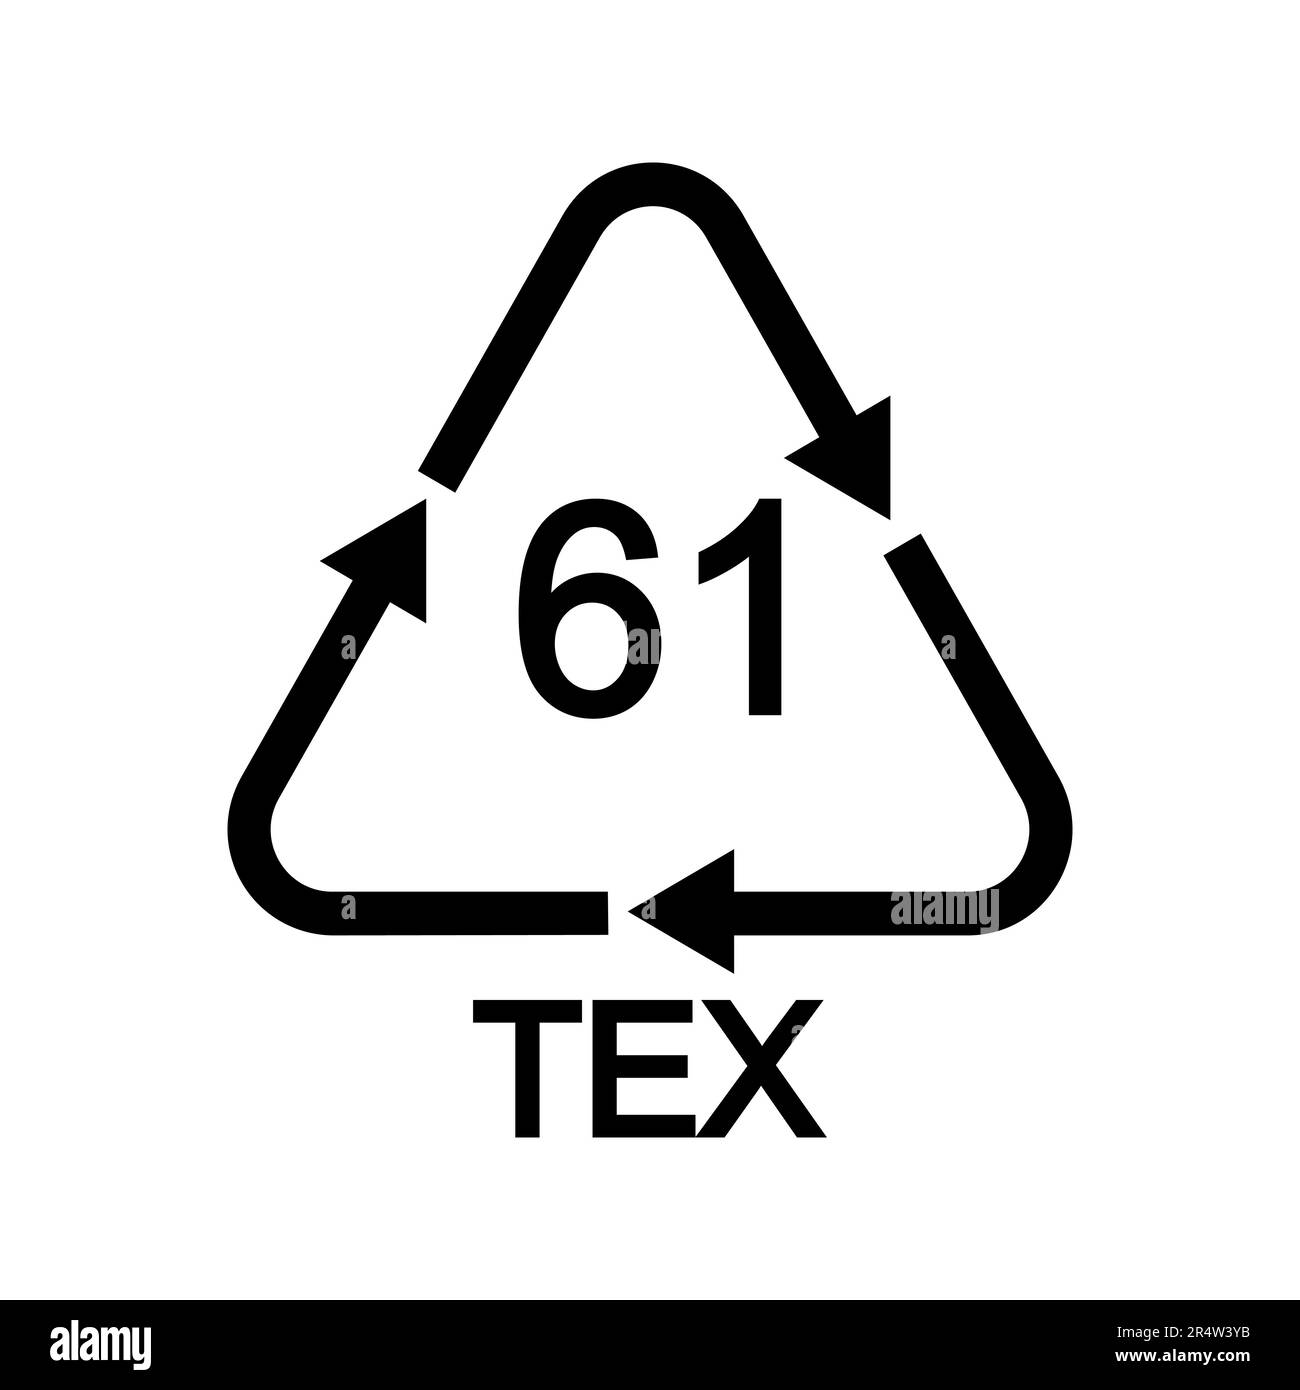 61 panneau de recyclage TEX en forme triangulaire avec flèches. Icône jute réutilisable isolée sur fond blanc. Concept de protection de l'environnement Illustration de Vecteur